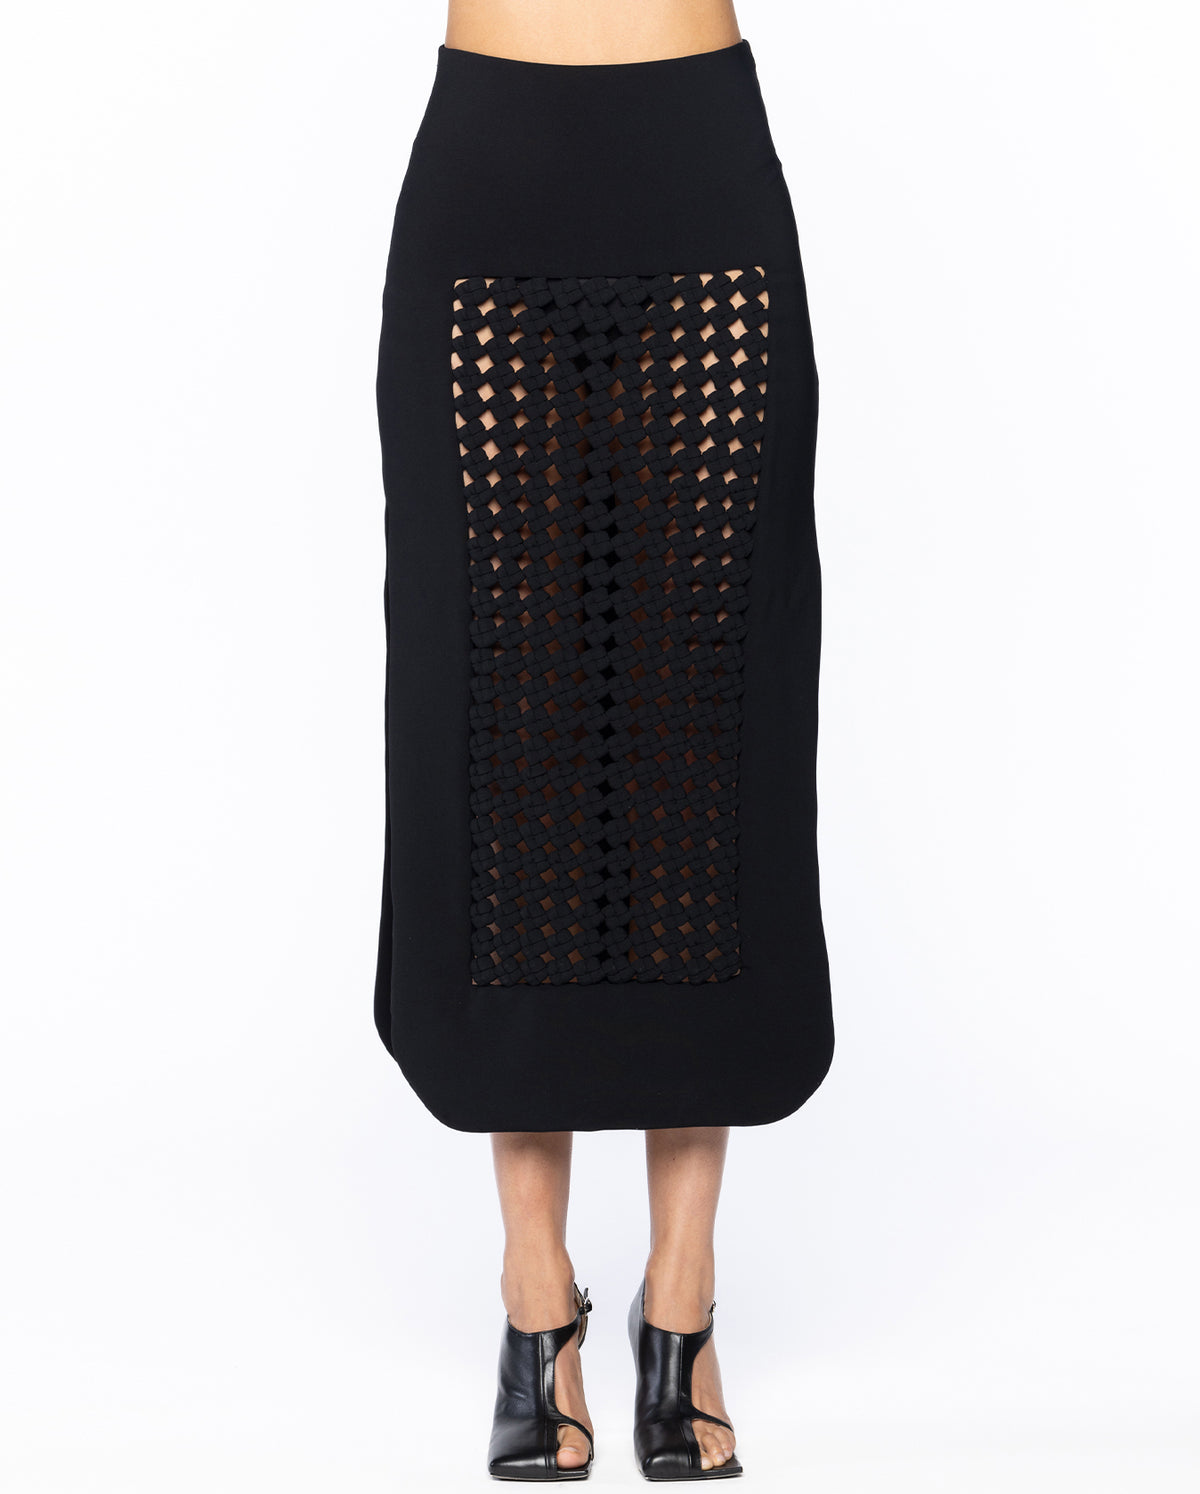 Maxi Skirt With Weaved Frame Insert